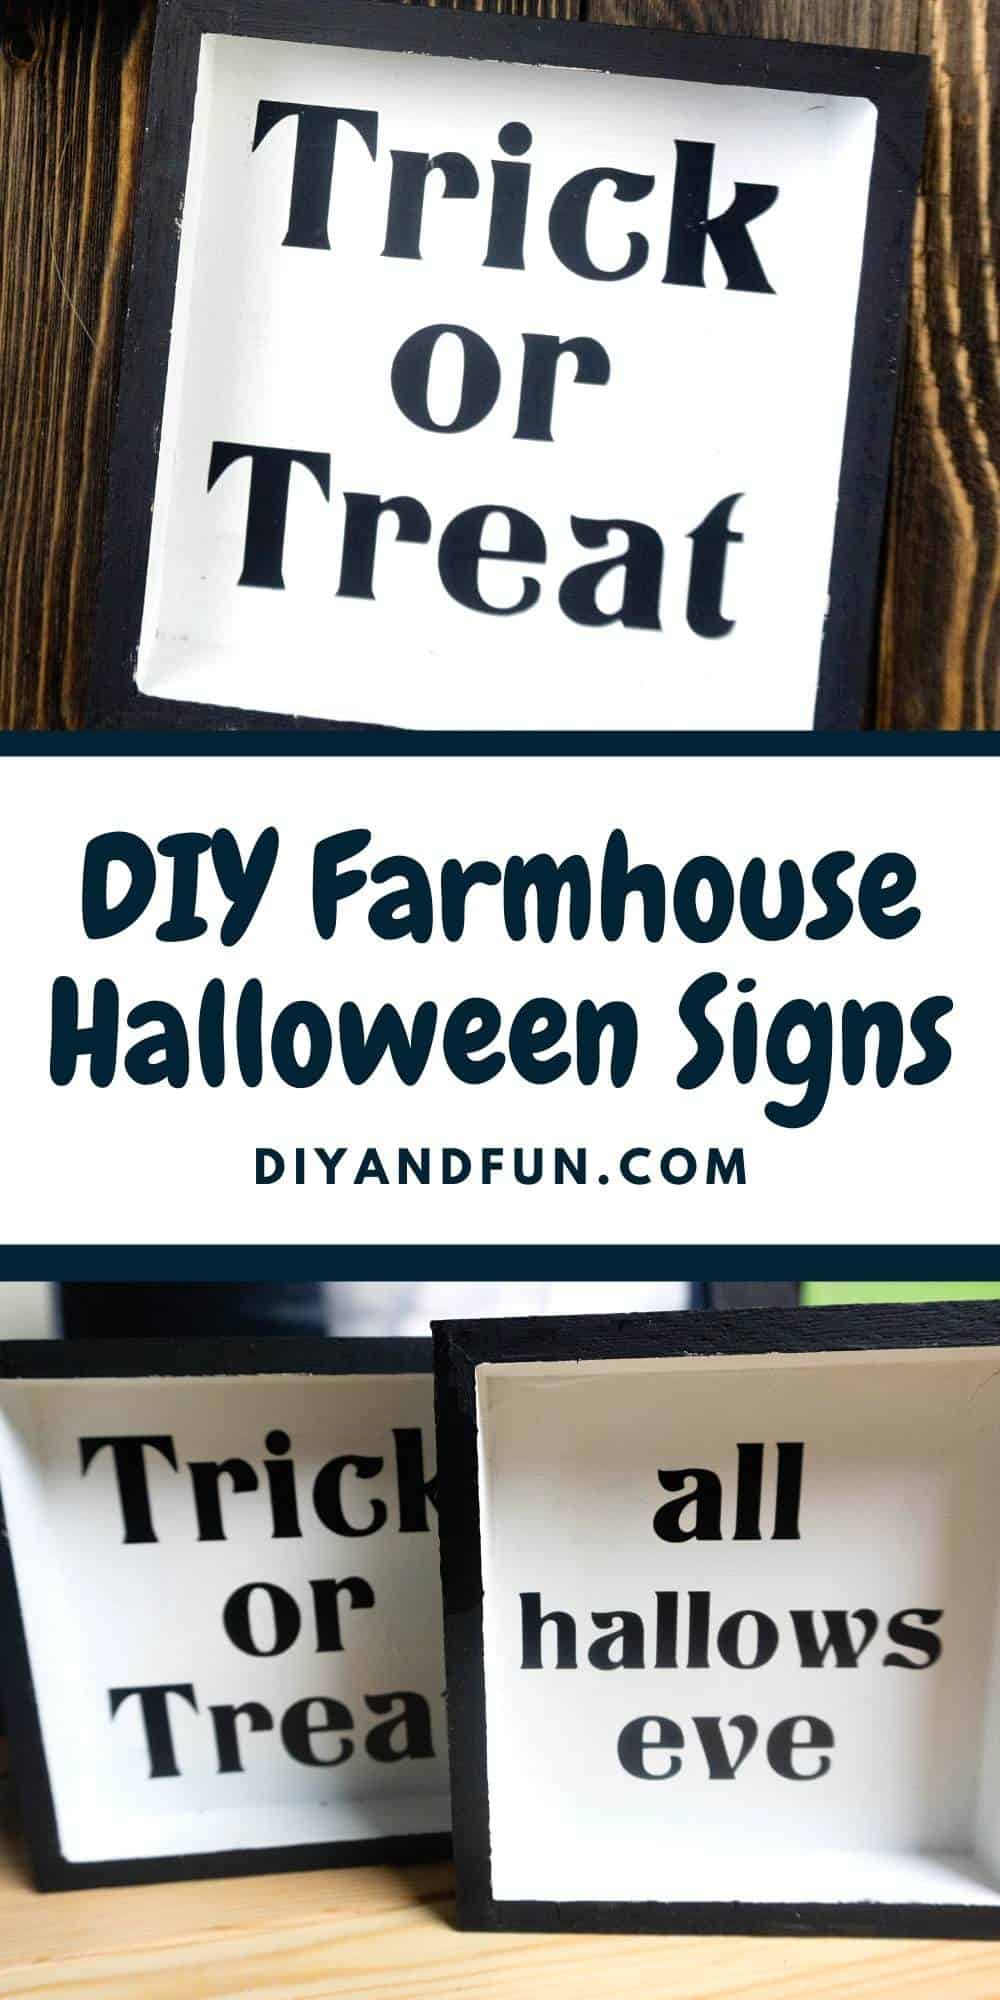 DIY Farmhouse Halloween Signs